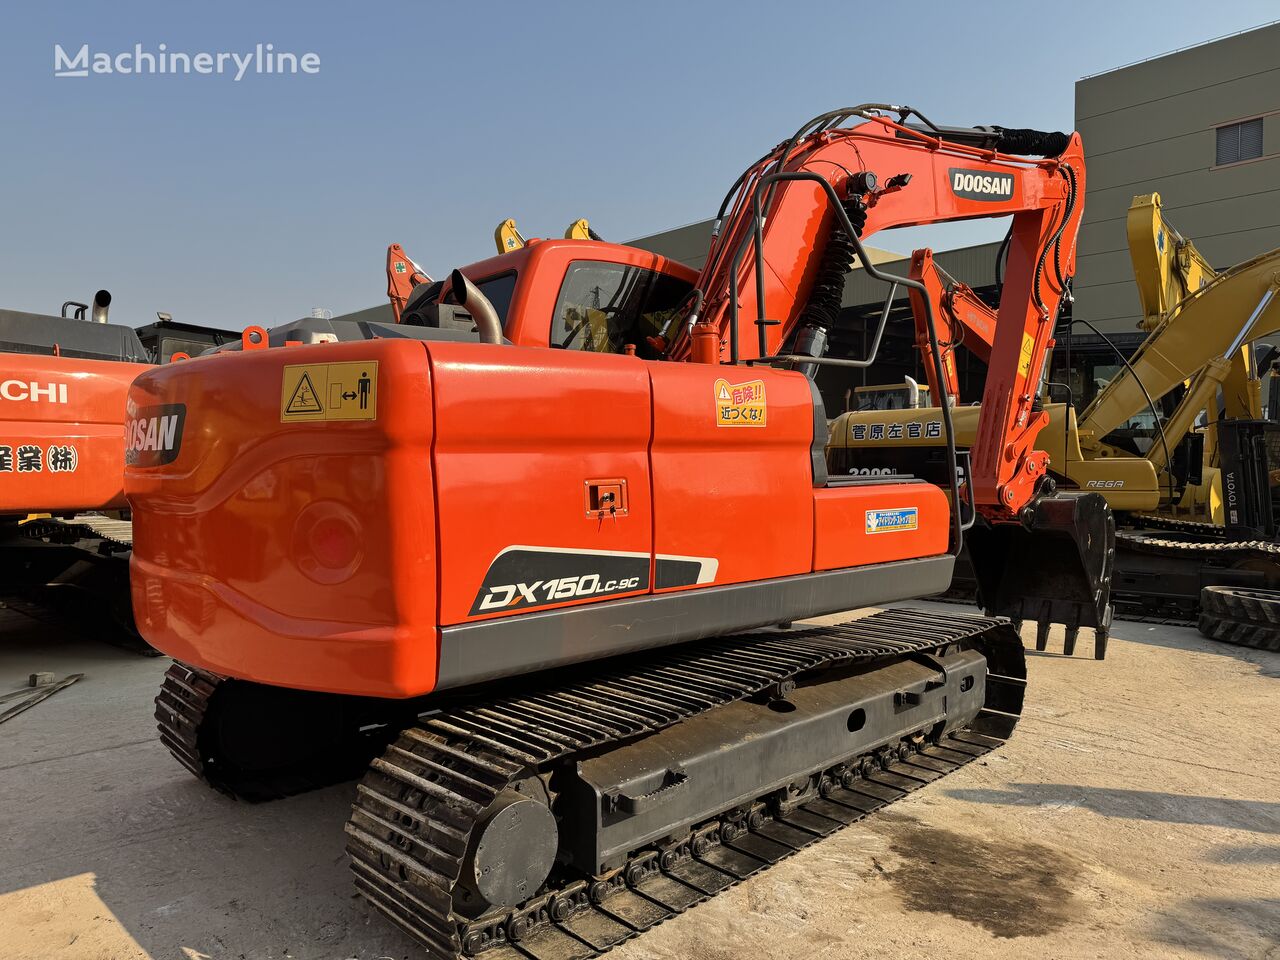 Doosan DX150 tracked excavator